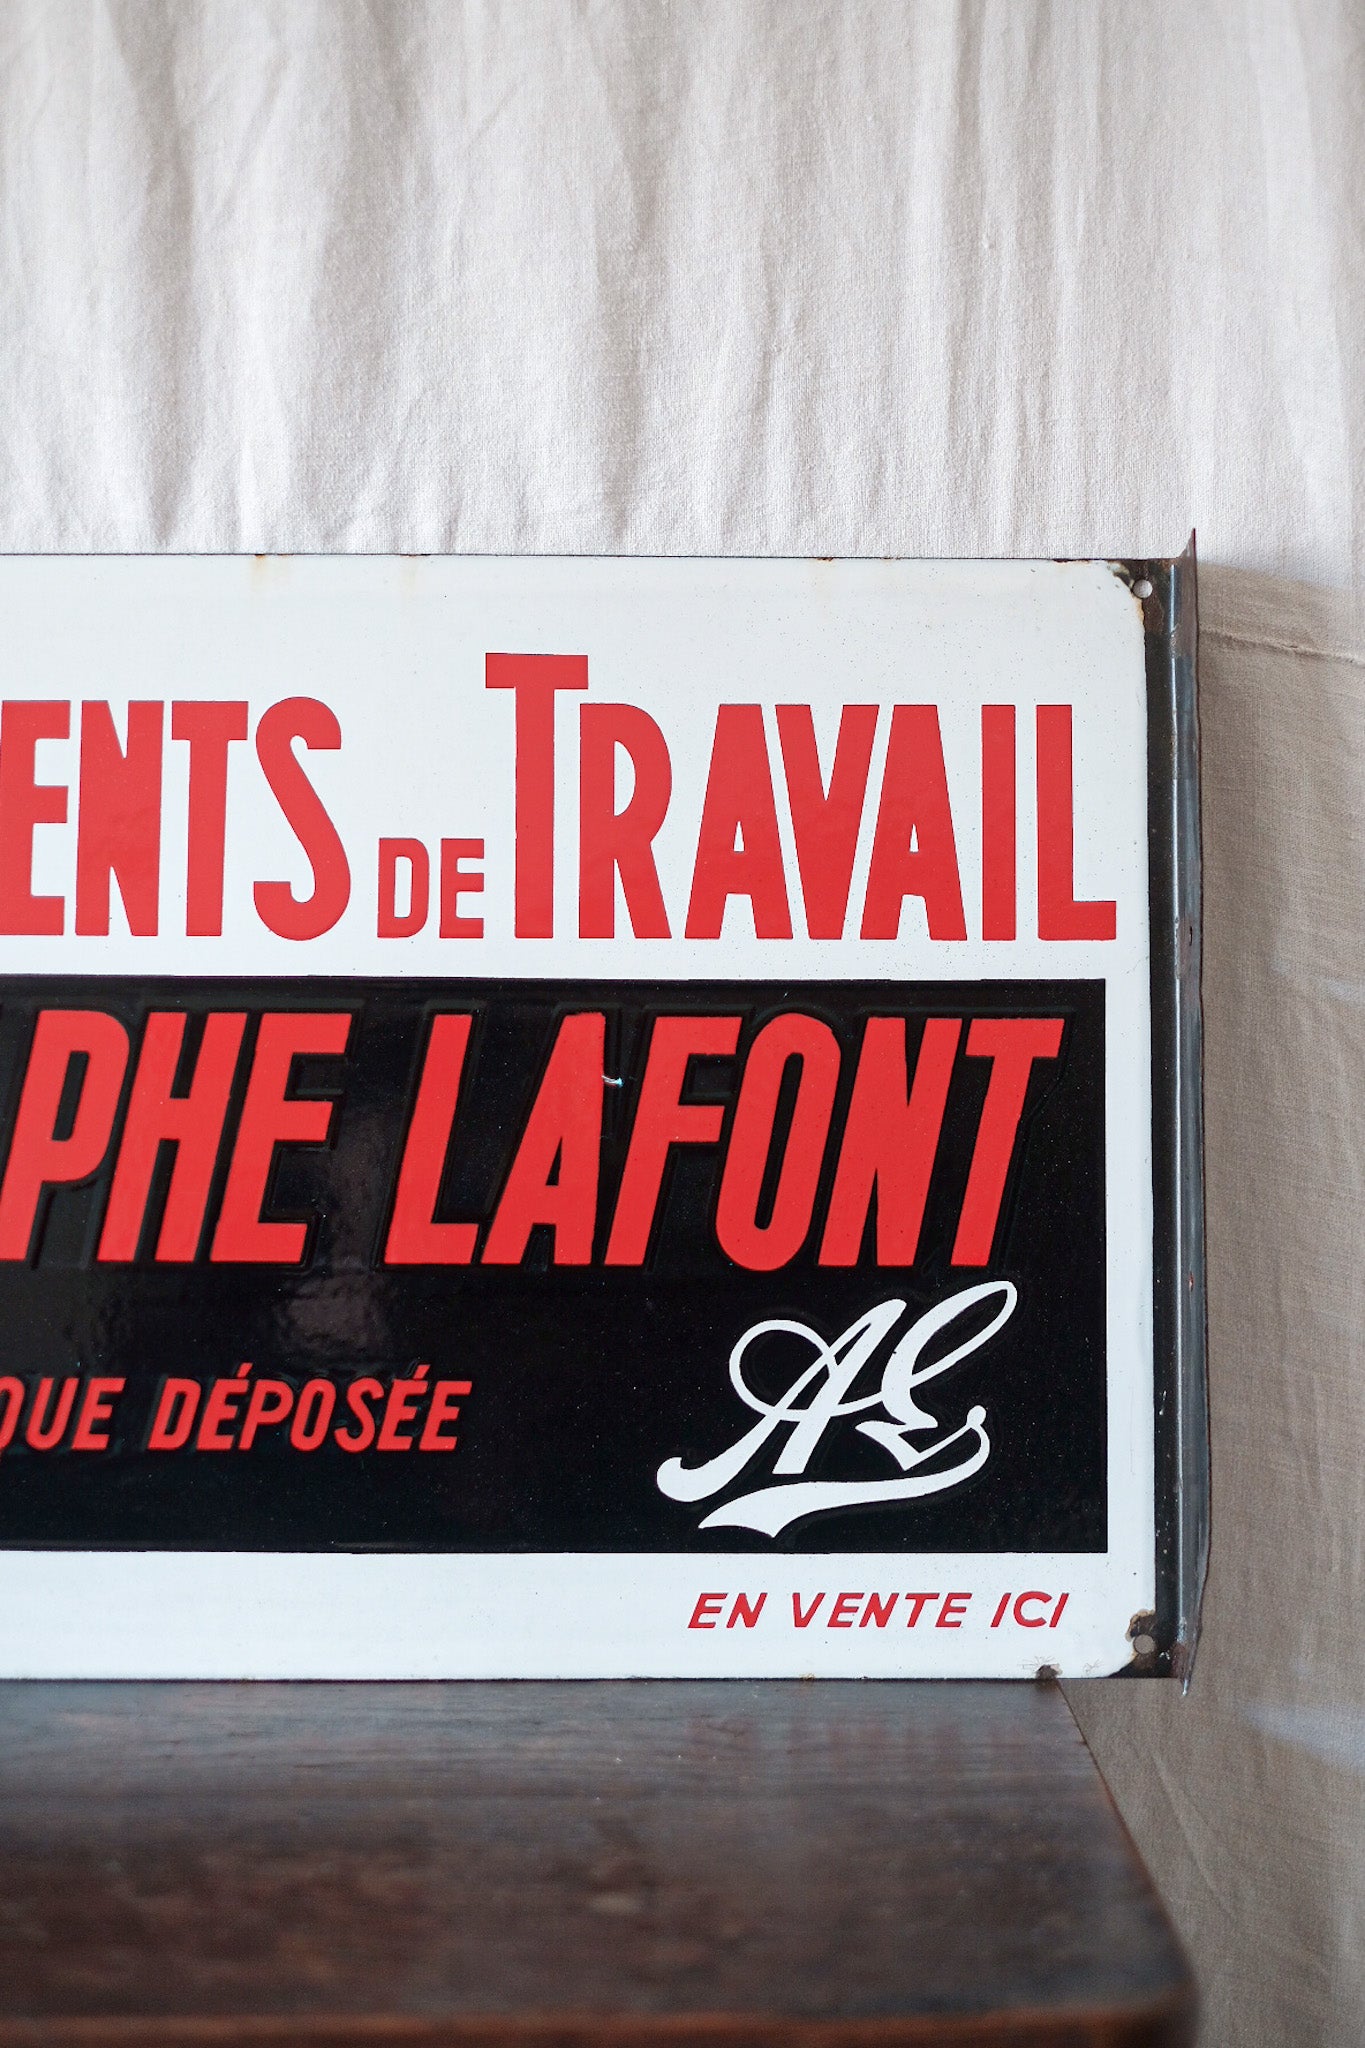 [~ 50's] Plaque d'émail vintage française "Adolphe Lafont"